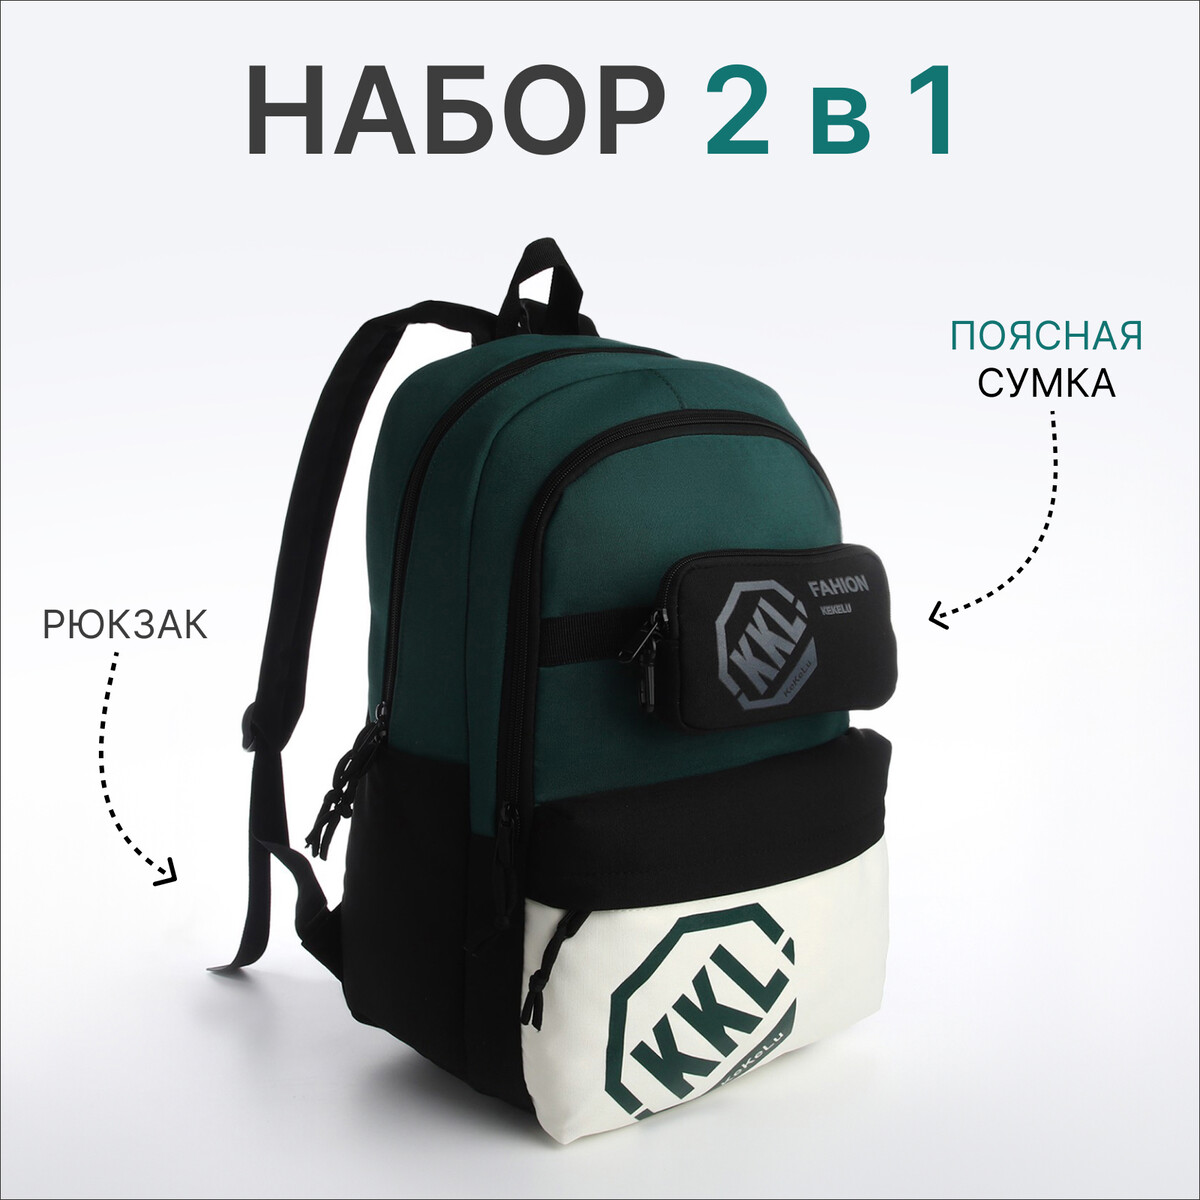 Рюкзак молодежный из текстиля на молнии, 3 кармана, сумка, держатель для чемодана, цвет черный/зеленый рюкзак молодежный водонепроницаемый на молнии 3 кармана зеленый